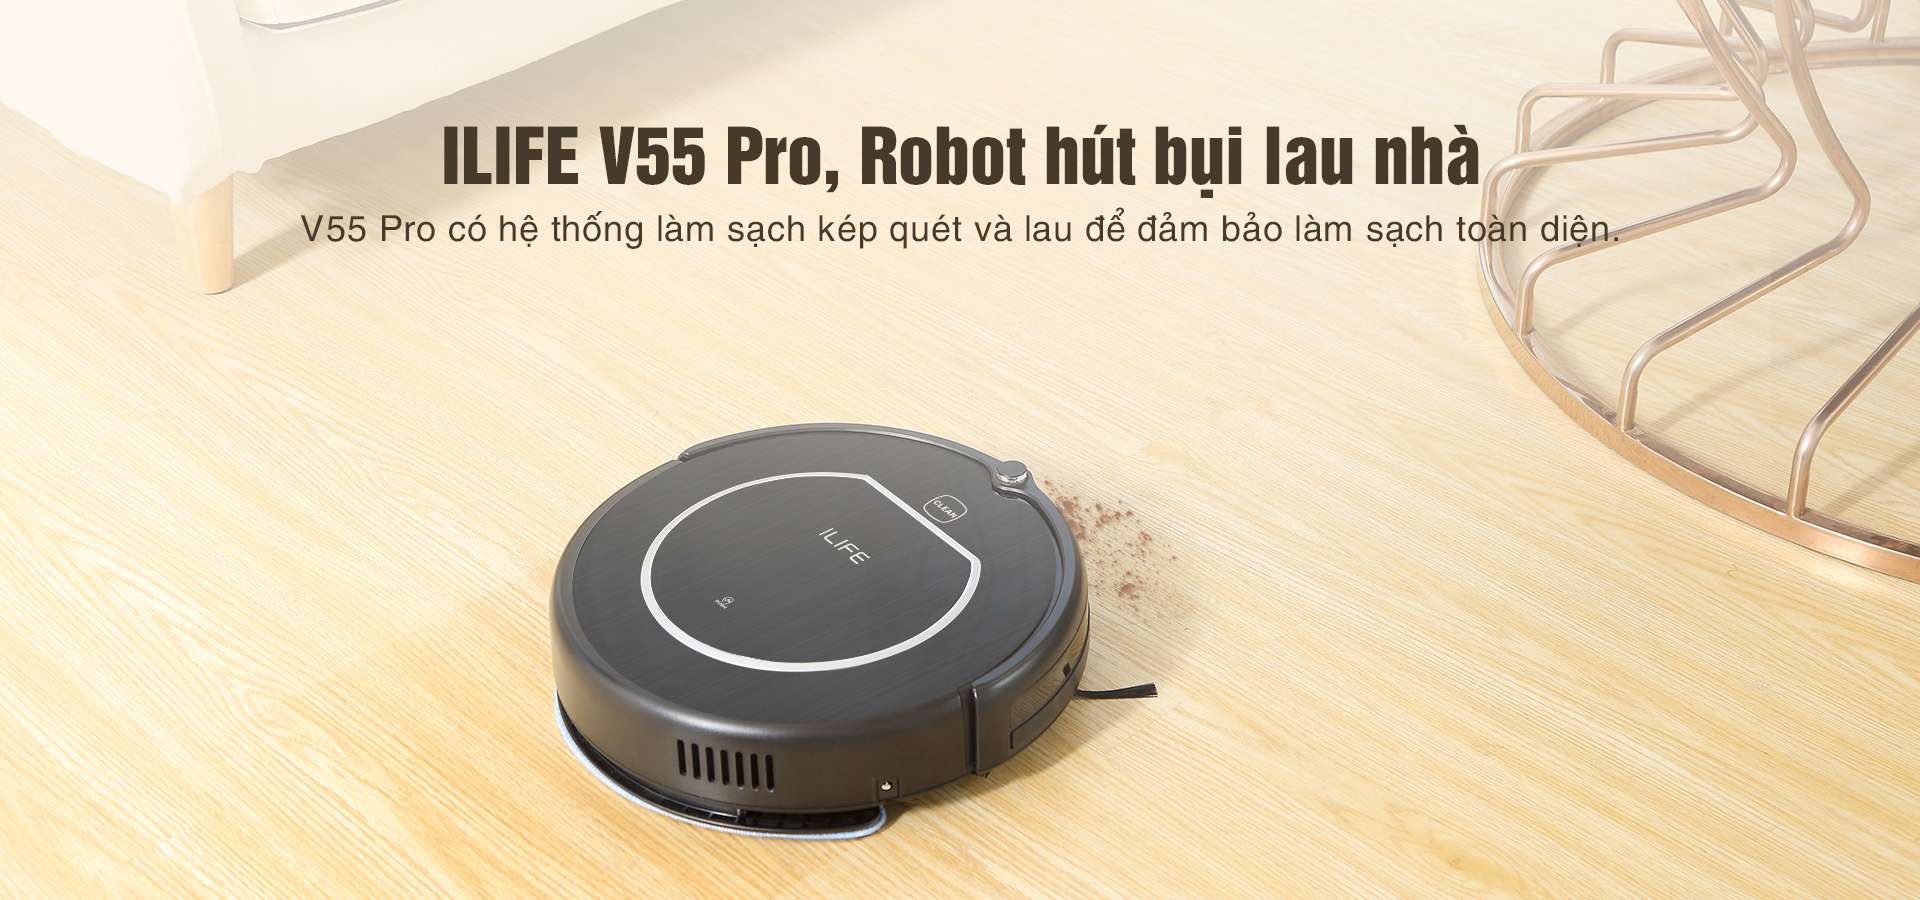 Robot Hút Bụi Lau Nhà ILIFE V55 Pro